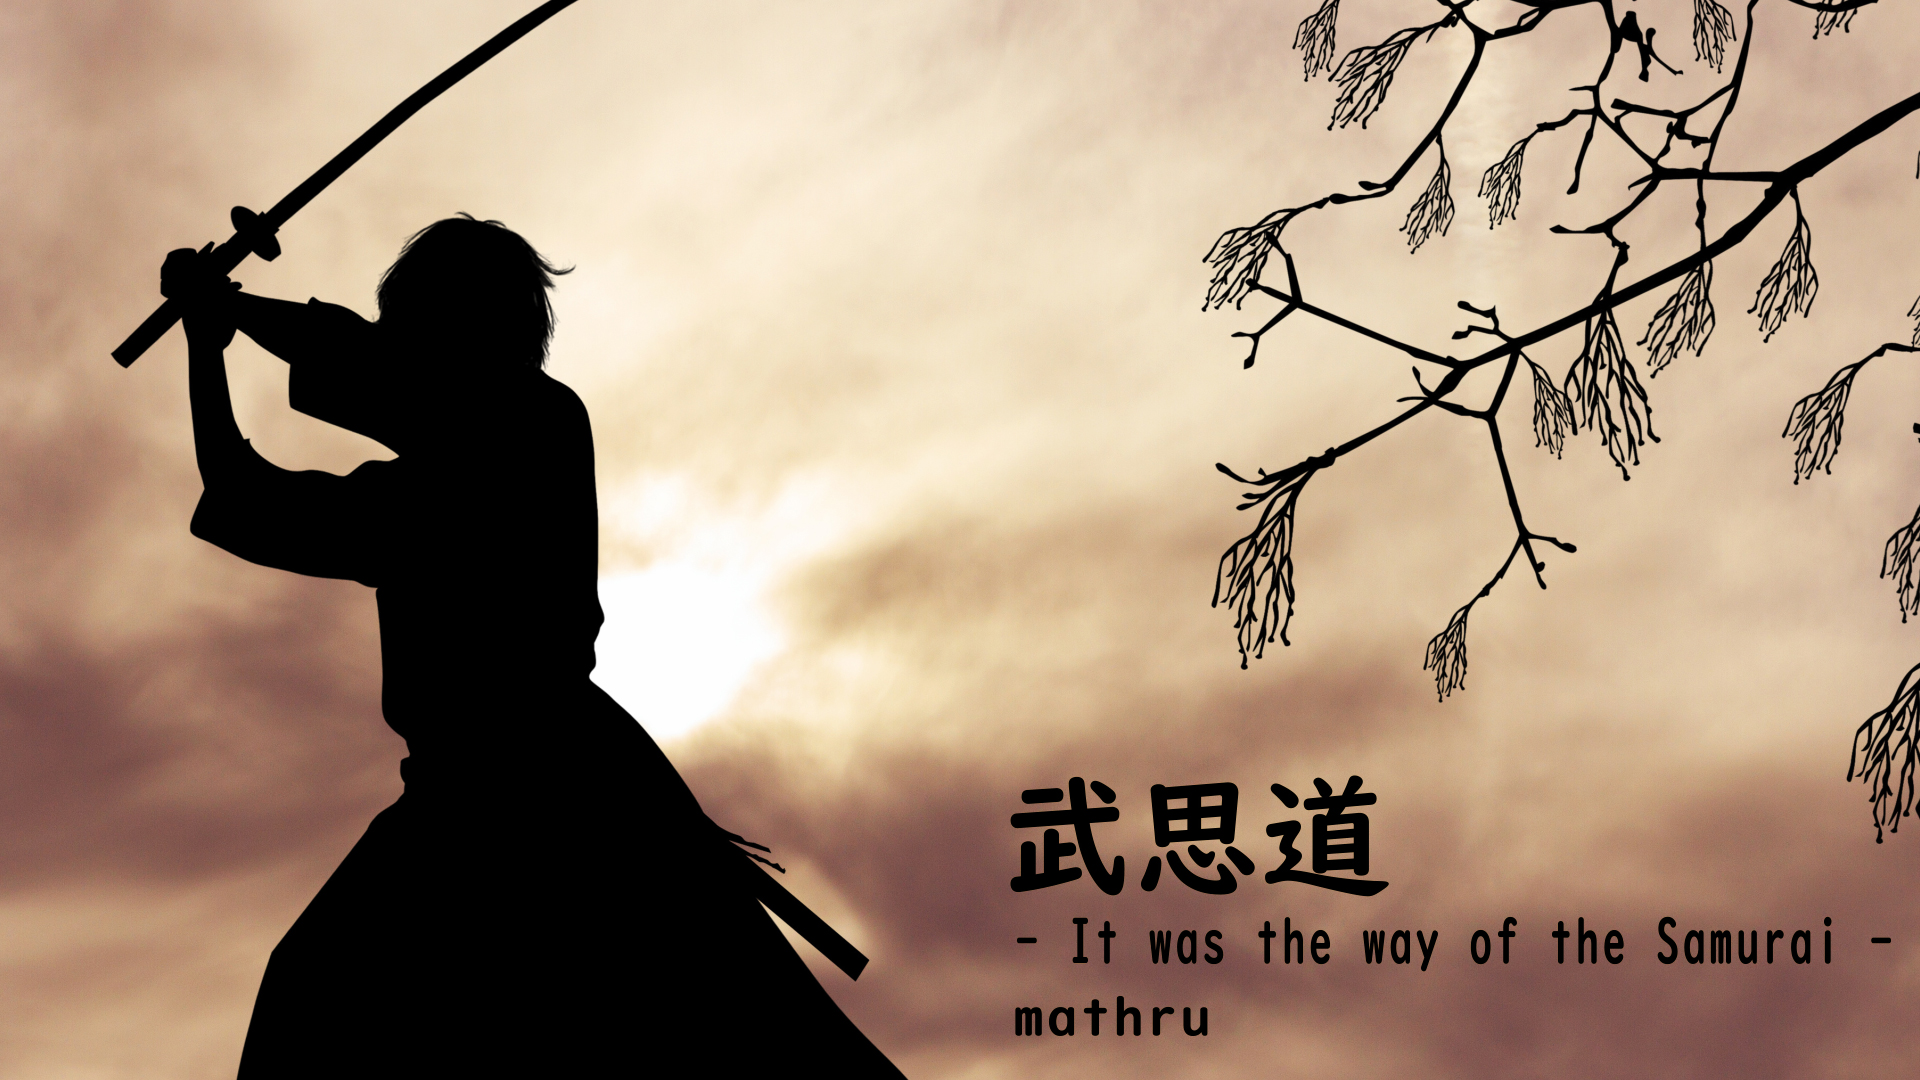 【神威がくぽ】 武思道 - It was the way of the SAMURAI -